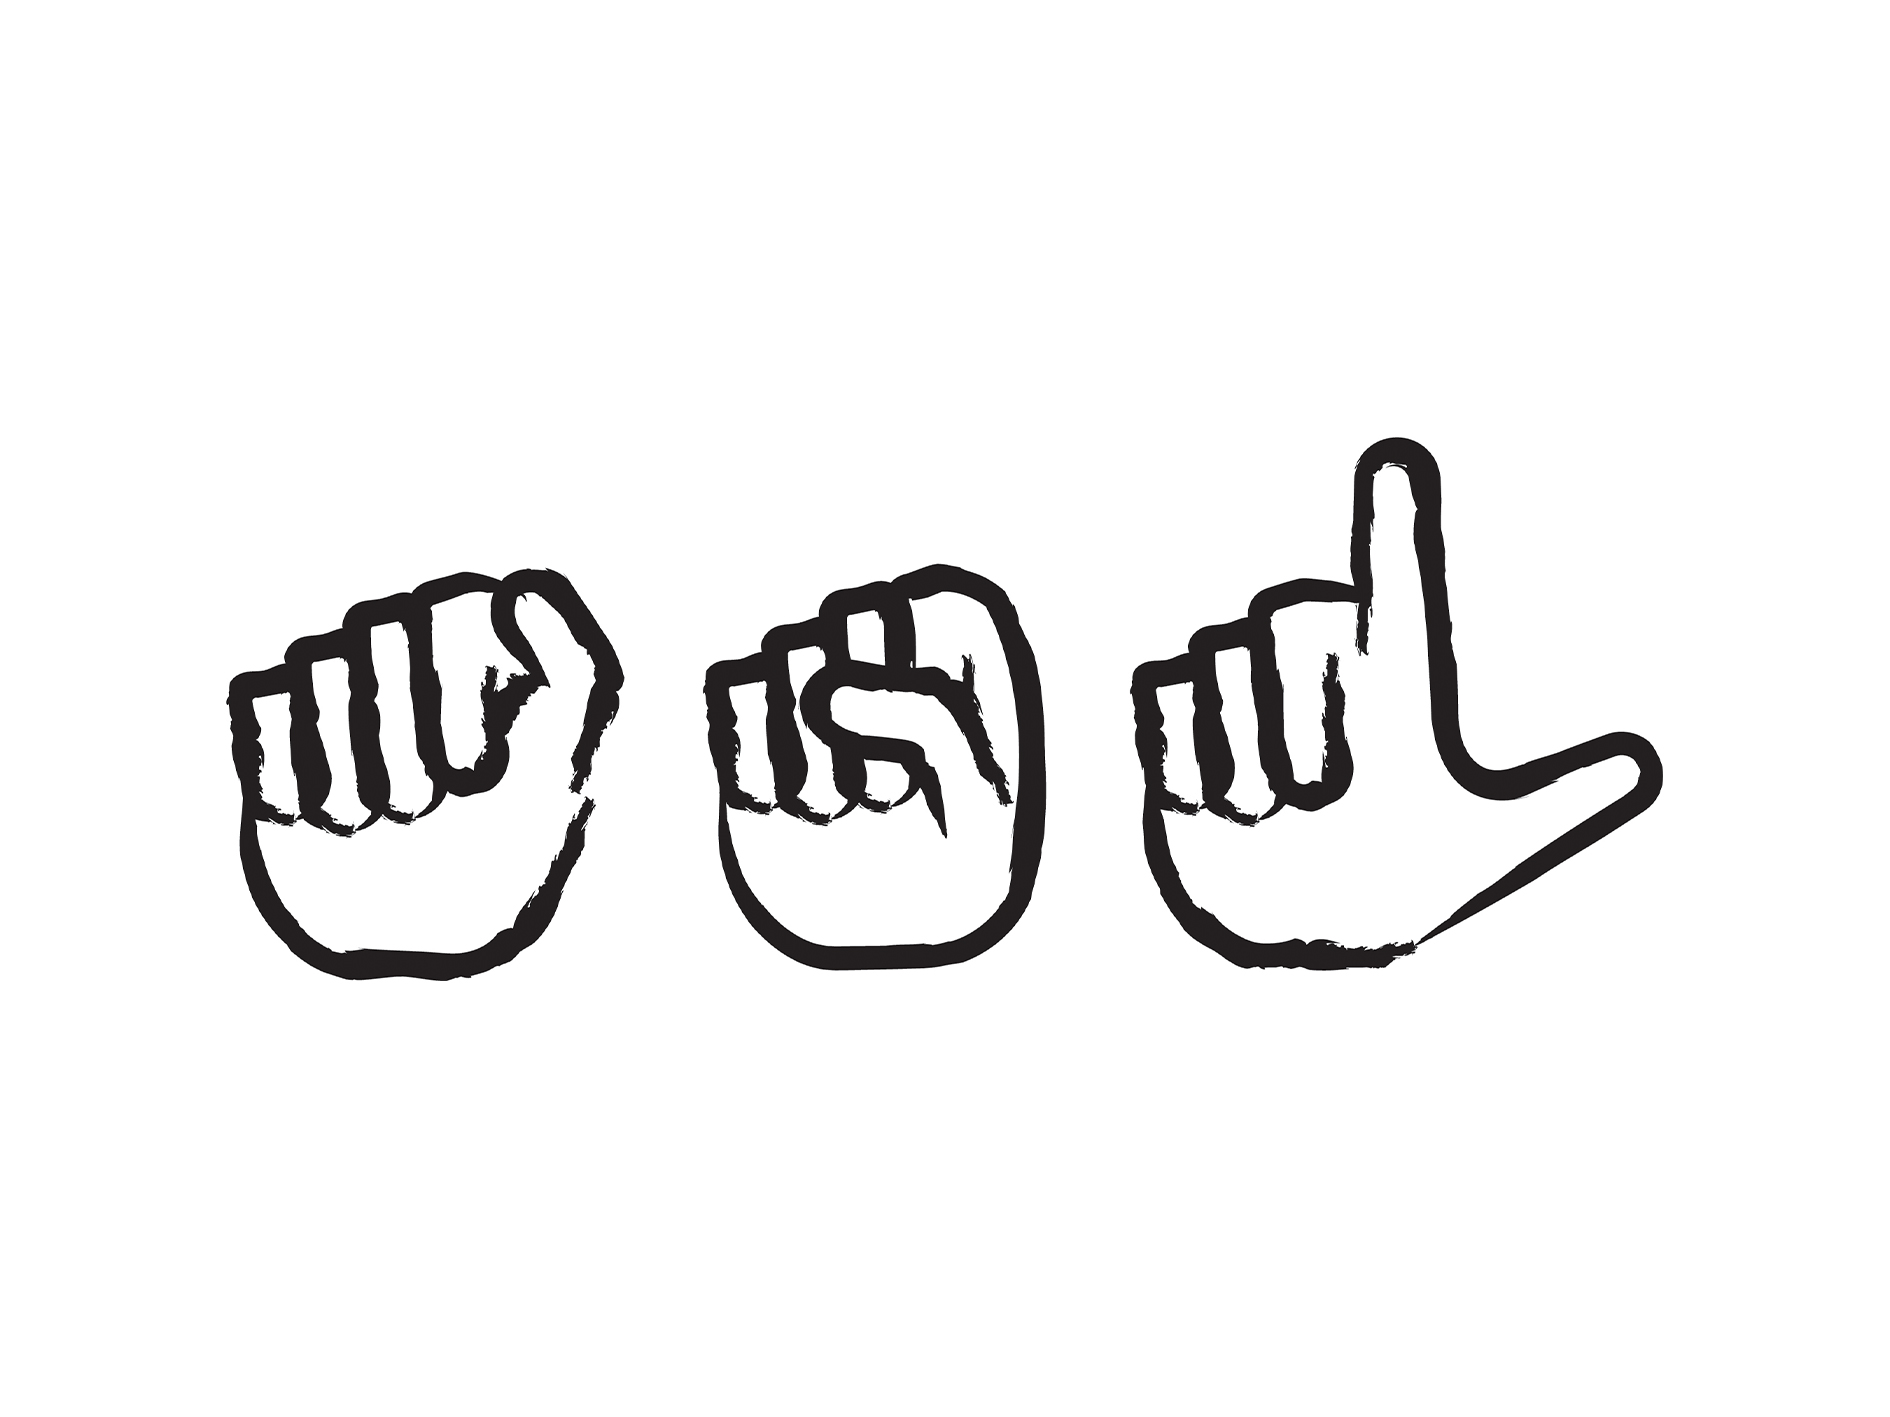 Une icône représentant l’épellation digitale d’« ASL » en langue des signes américaine.